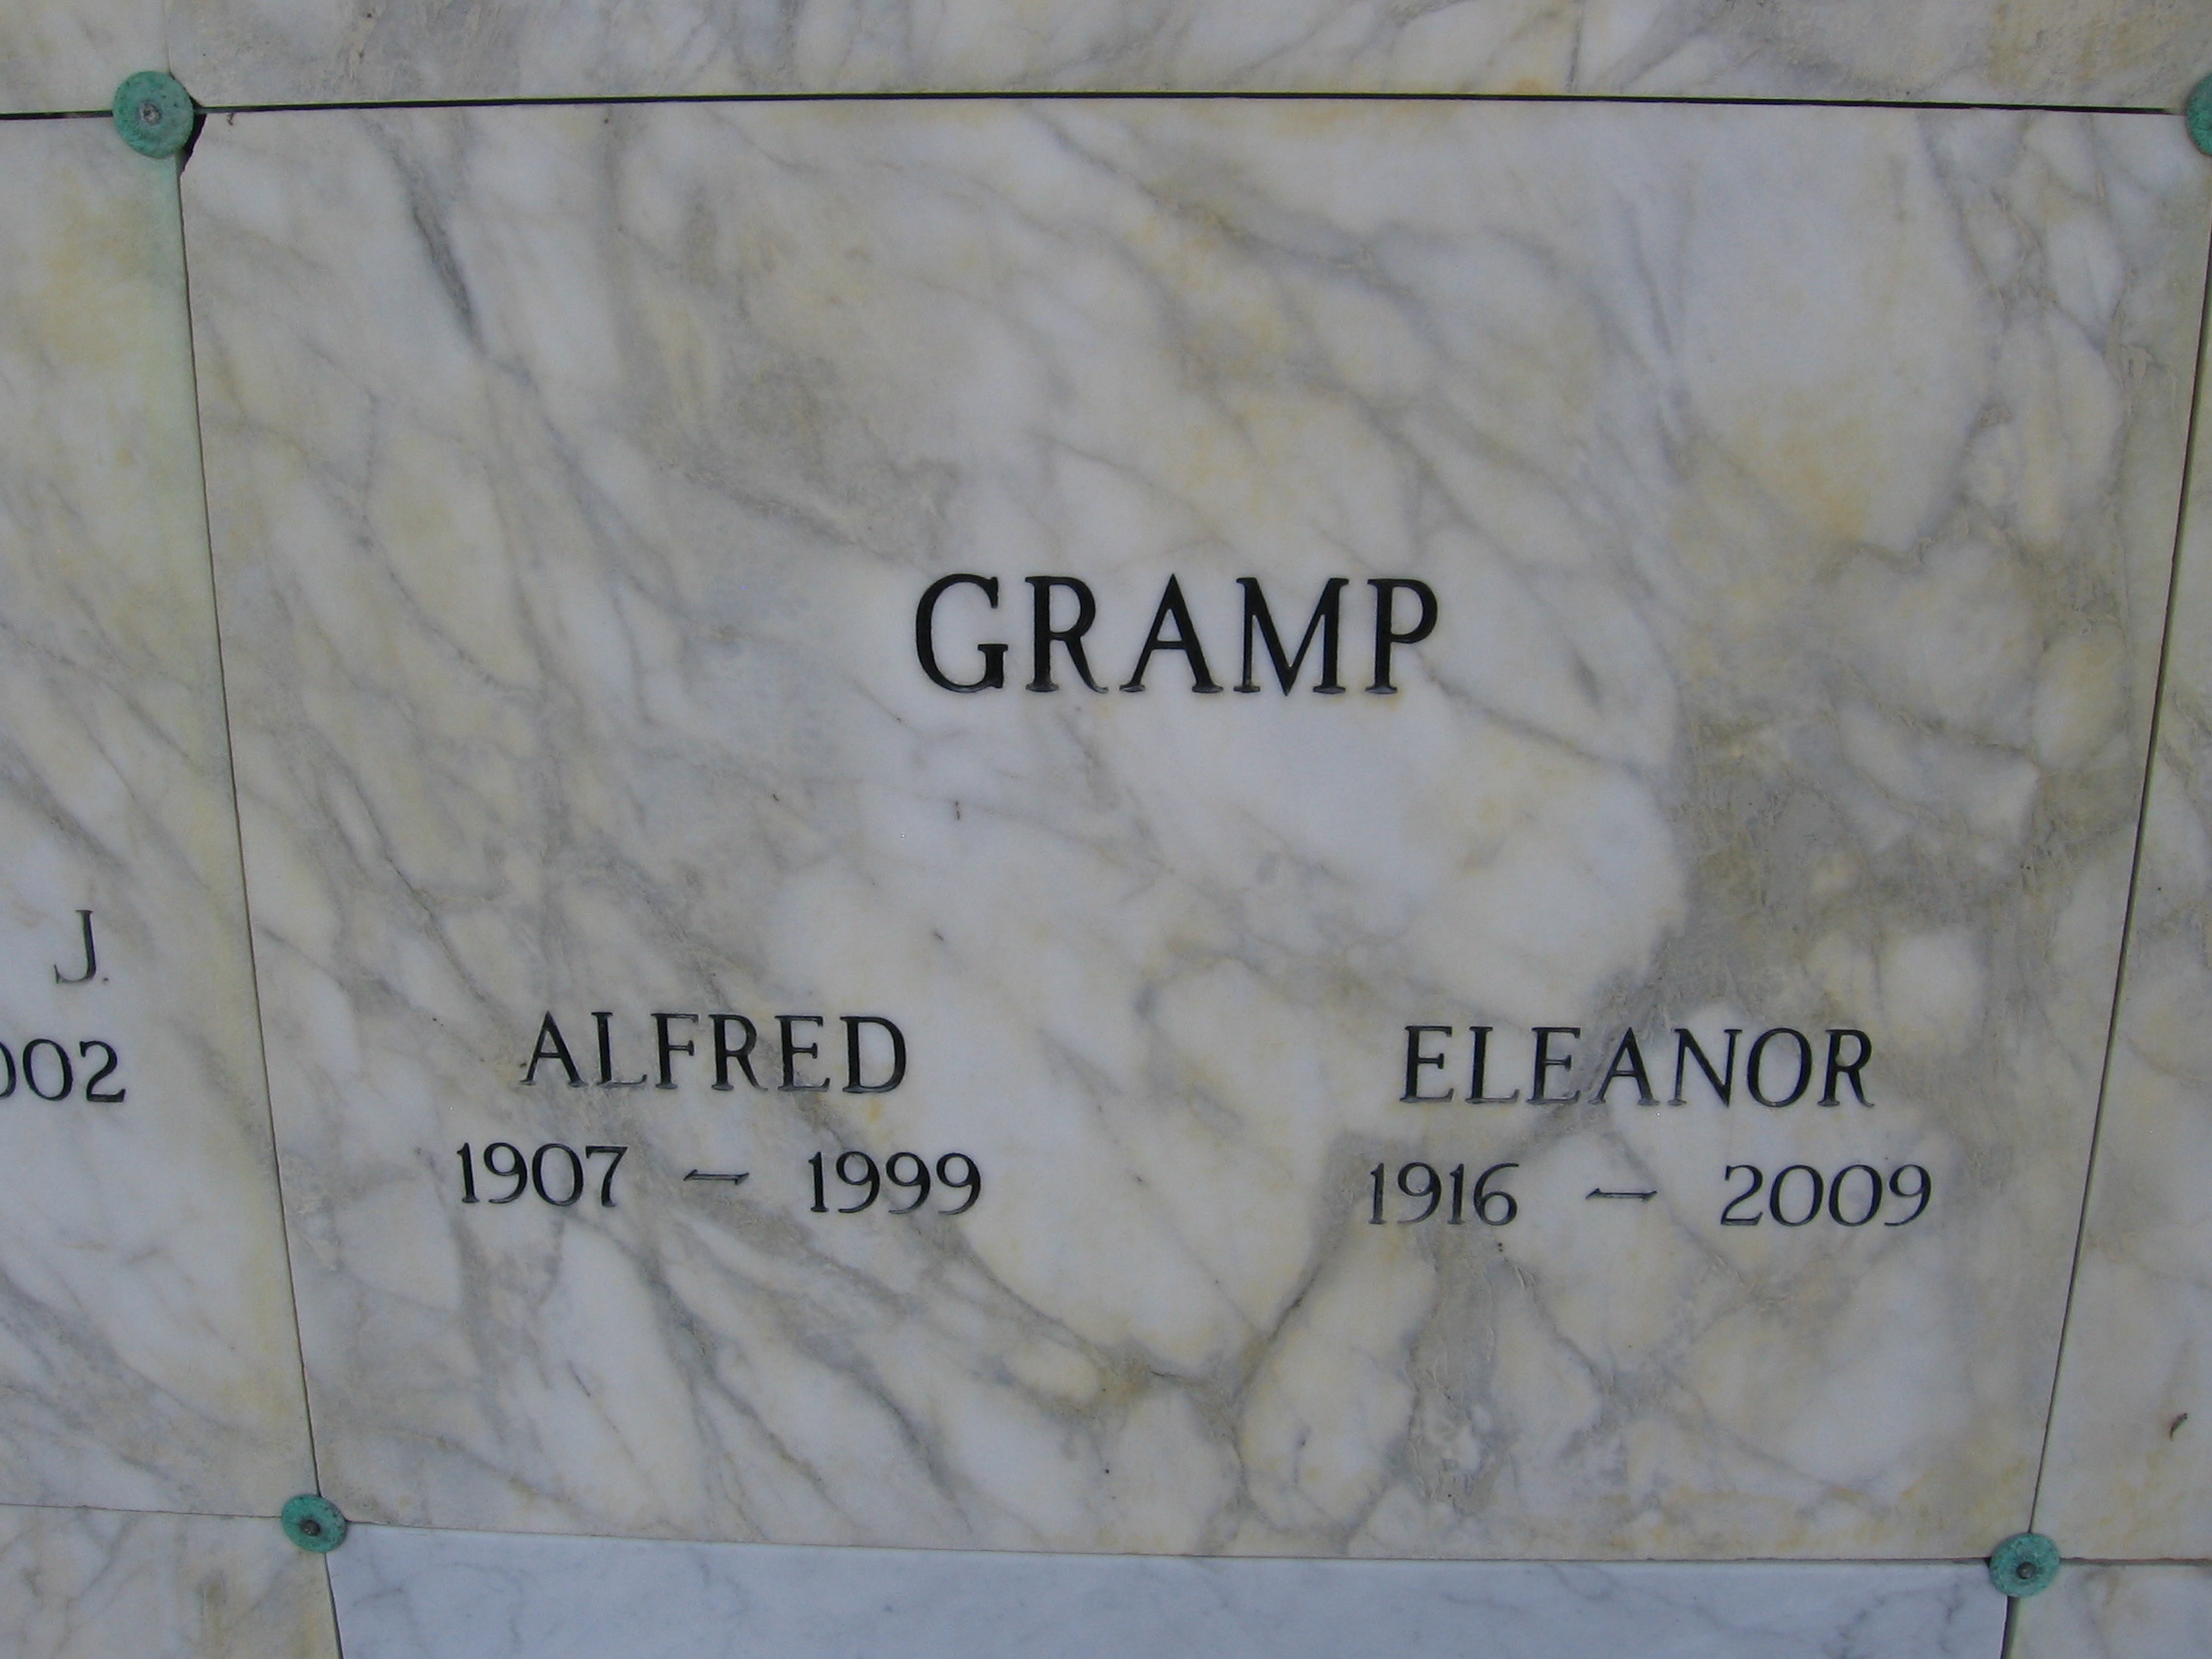 Alfred Gramp